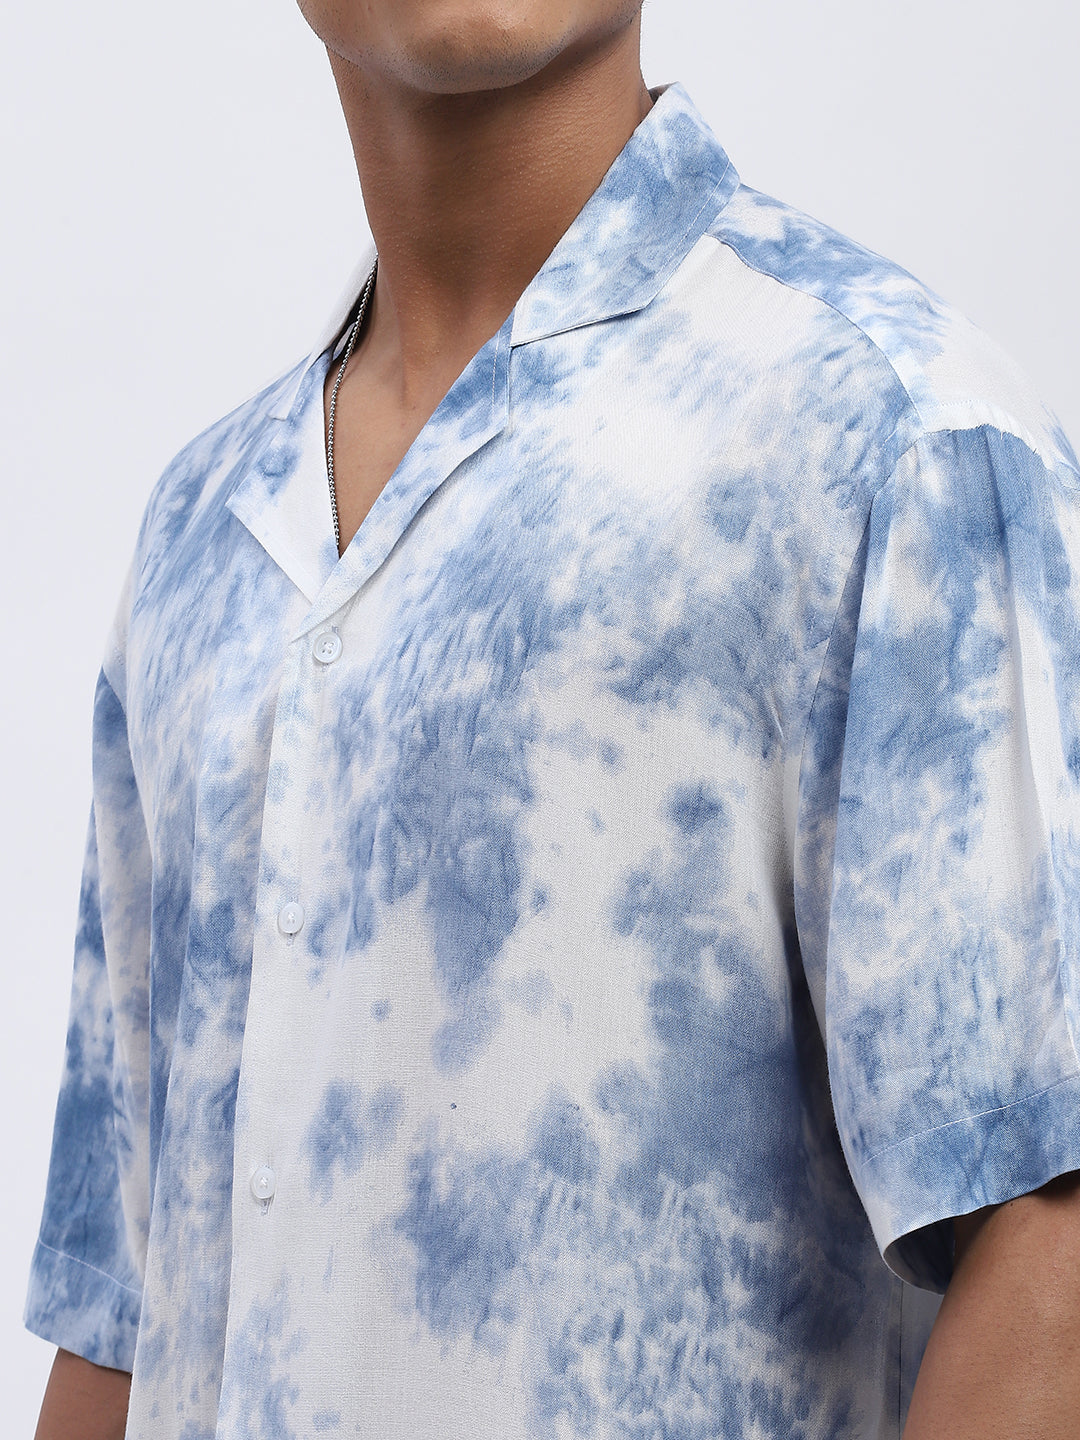 Blue White Tie-Dye Men's  Shirt